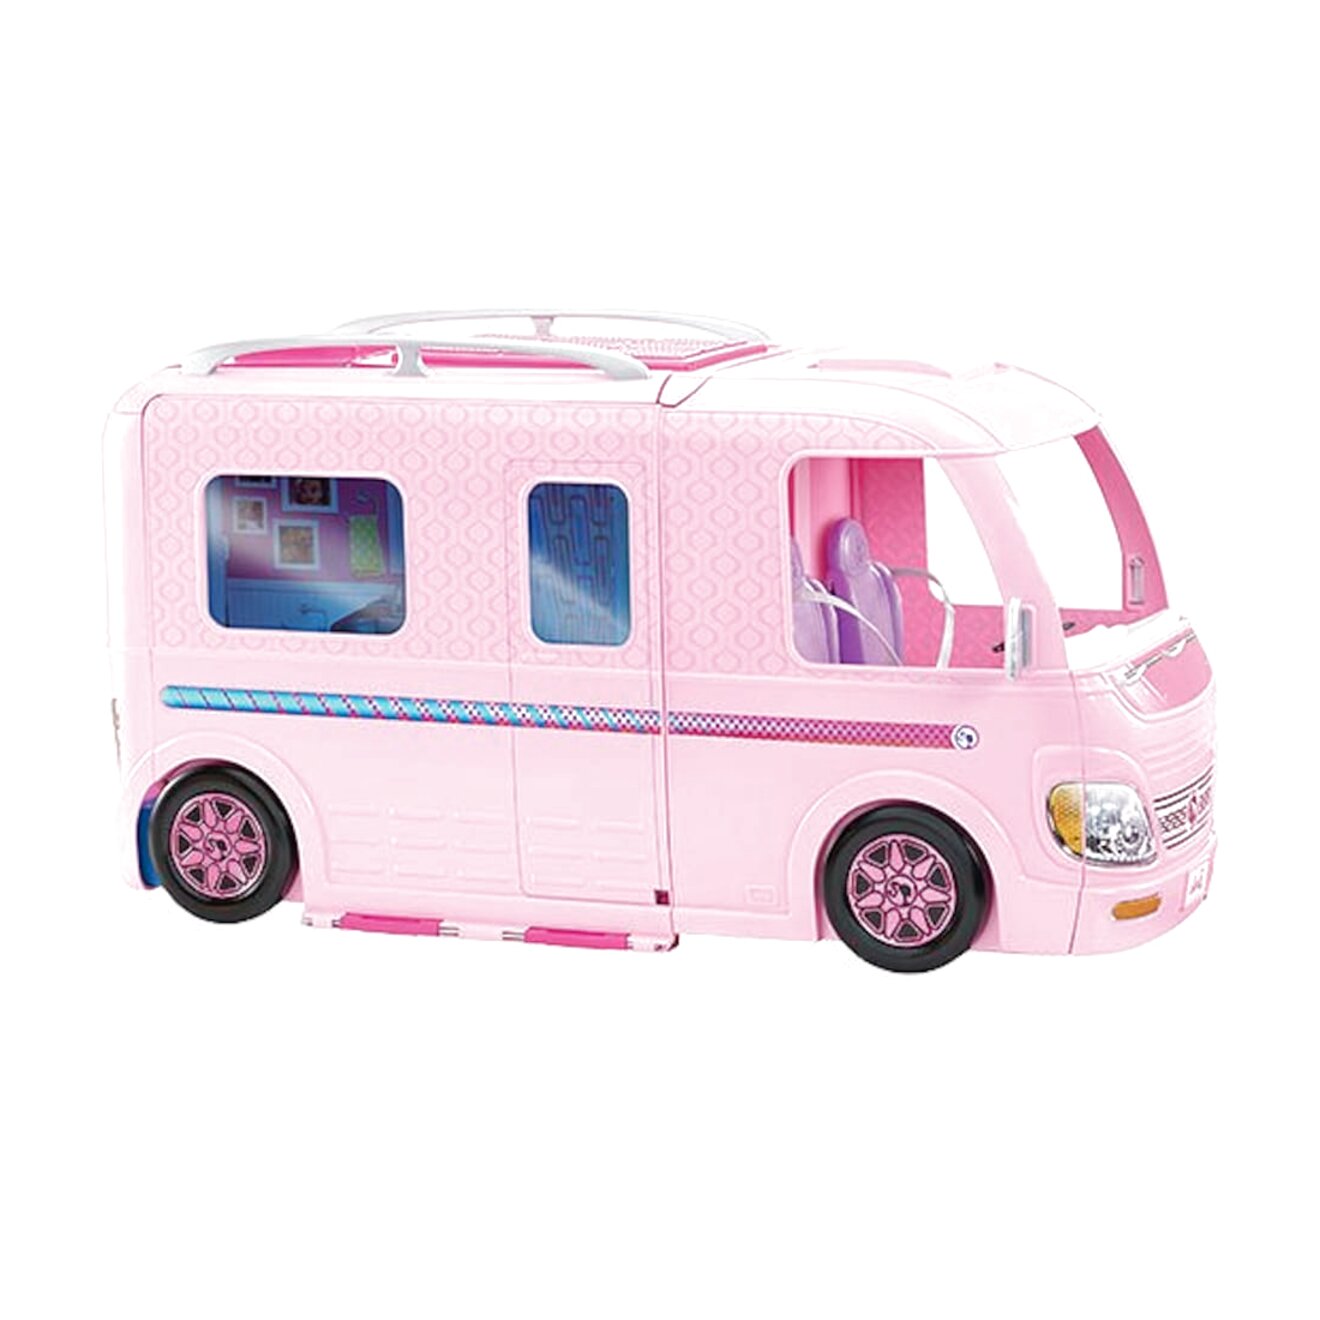 barbie van with pool